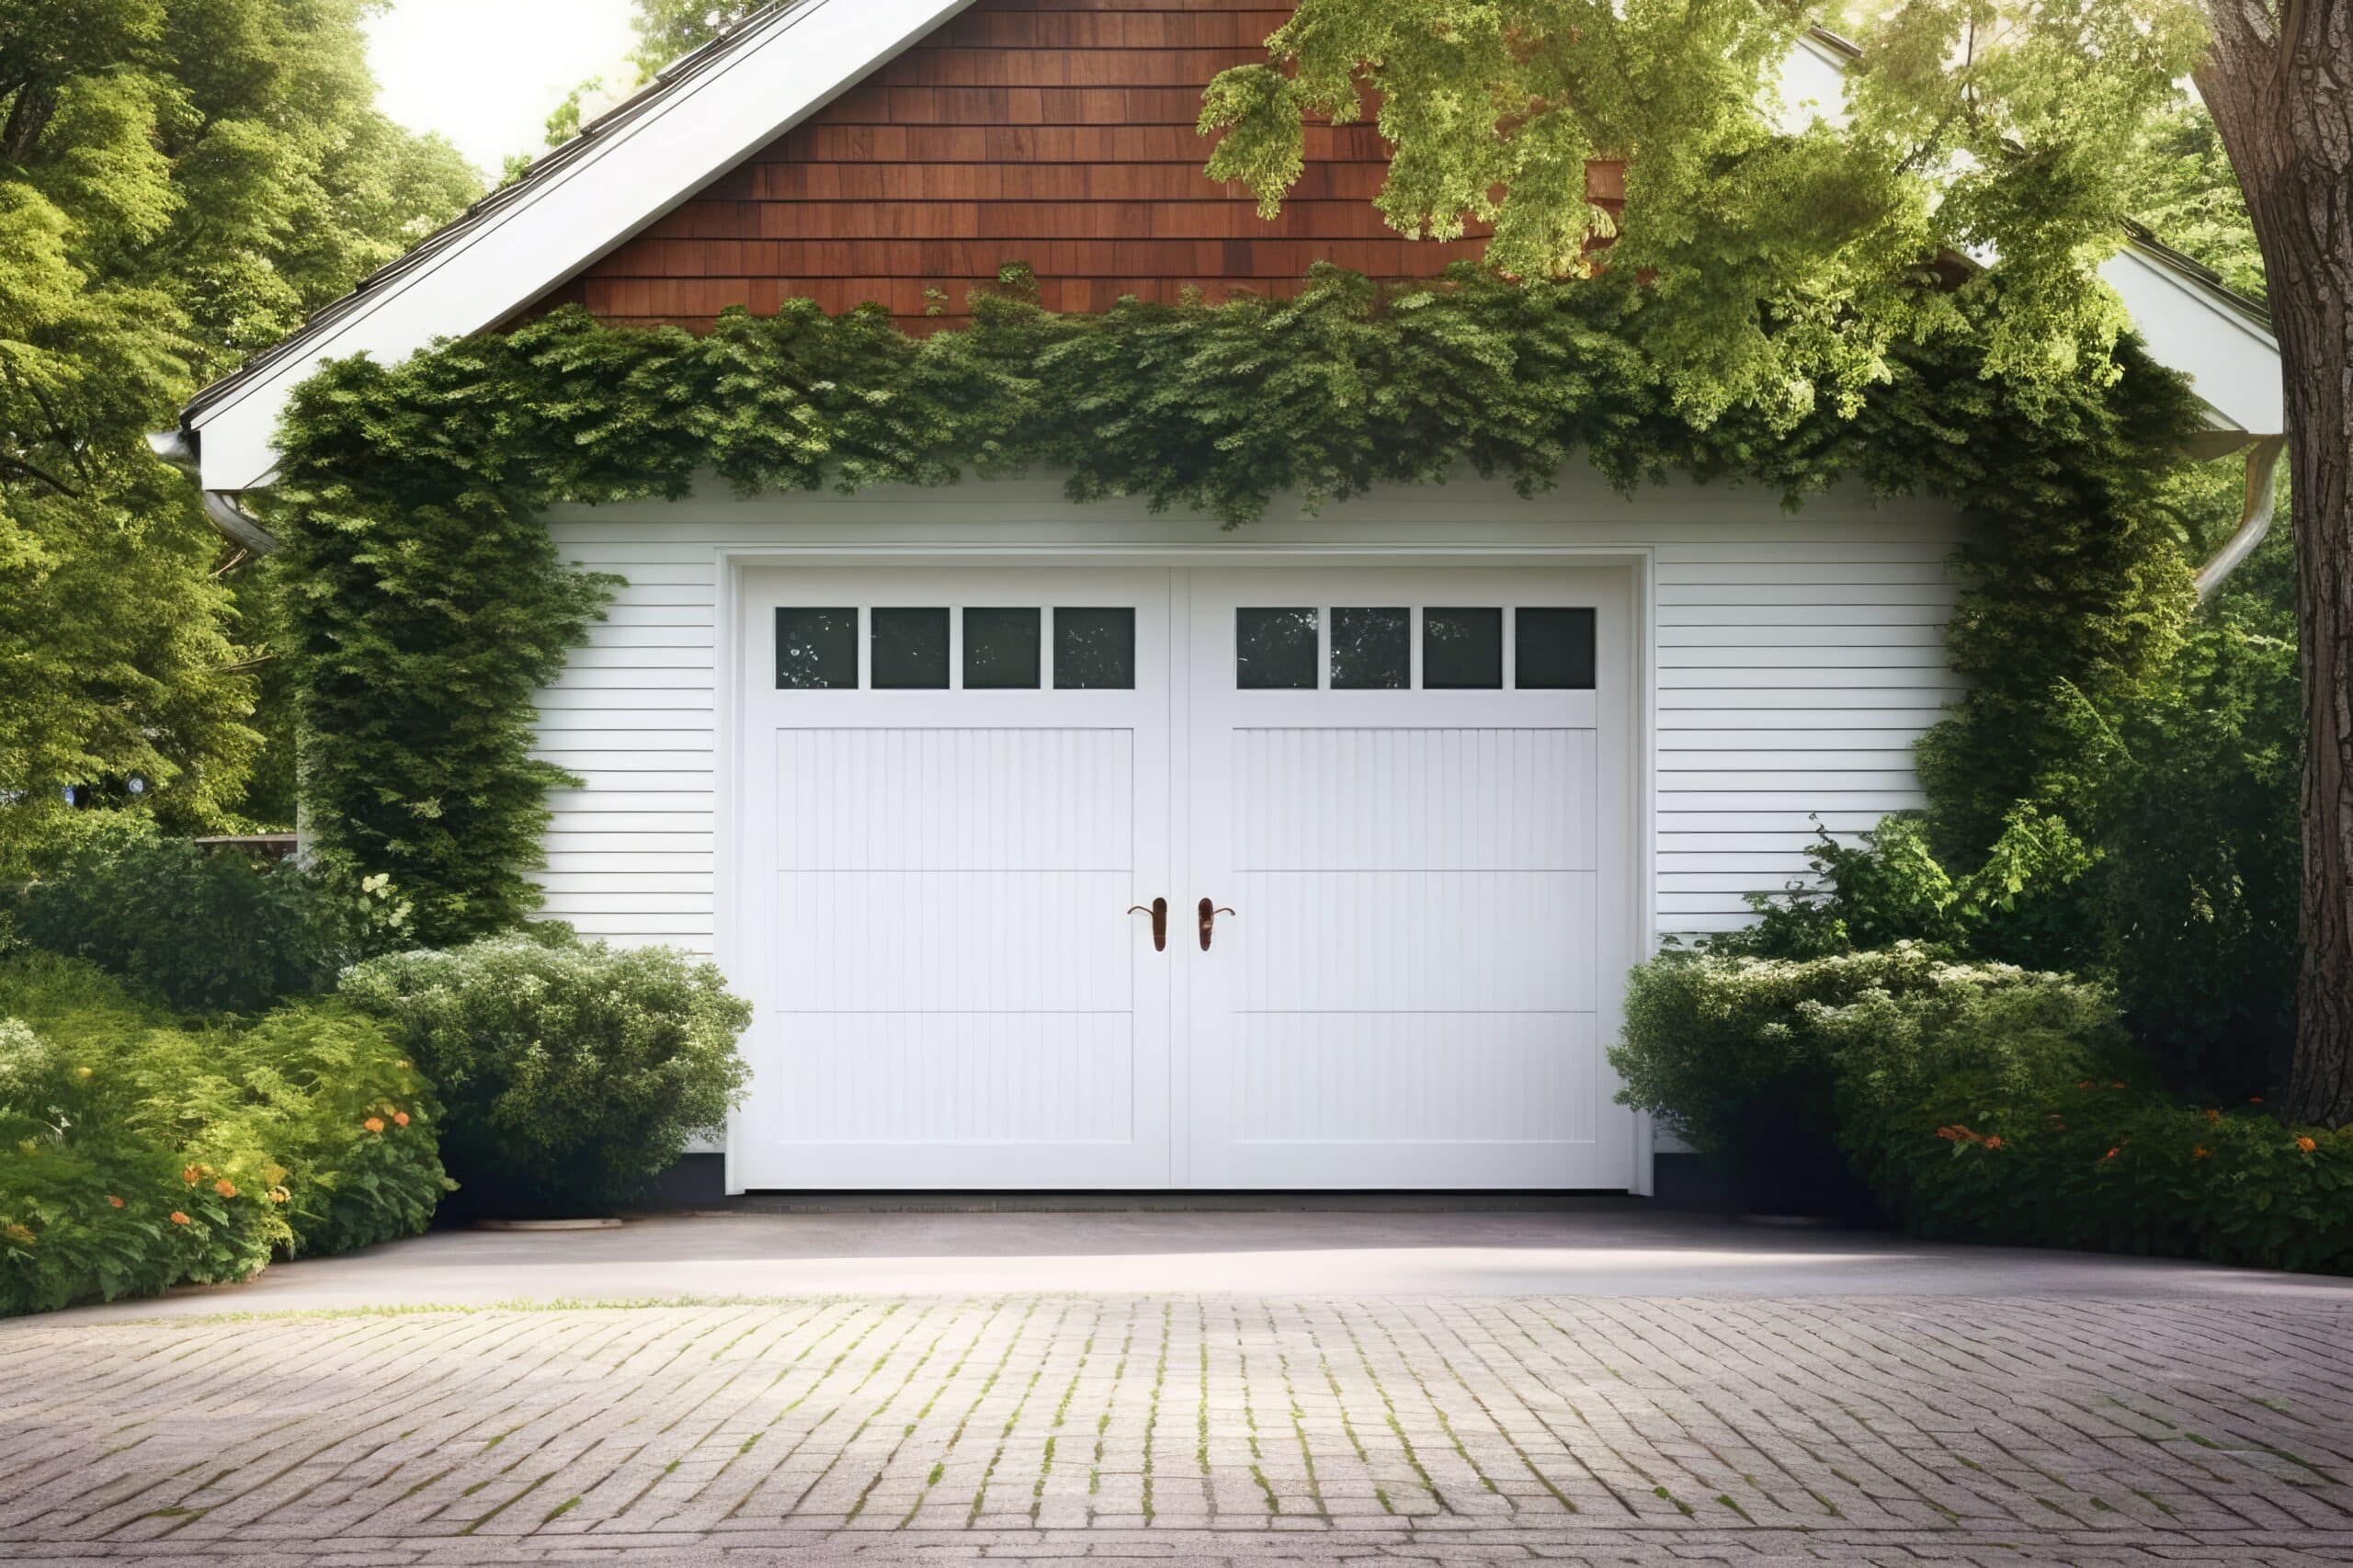 www.appr.com : How To Install Chamberlain Smart Garage Door Opener?